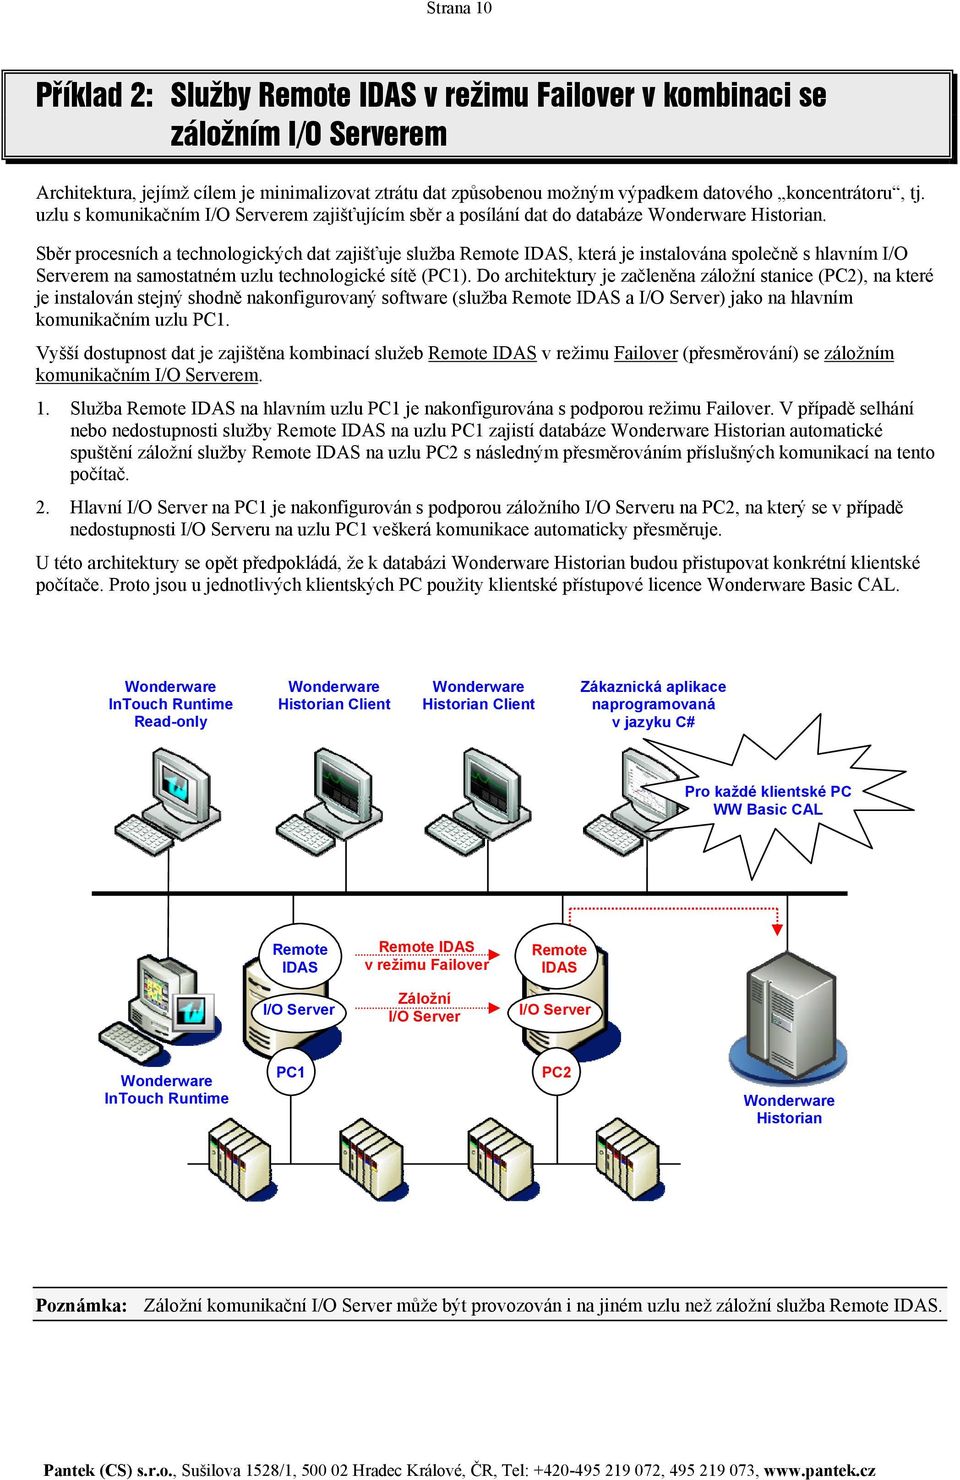 Sběr procesních a technologických dat zajišťuje služba Remote IDAS, která je instalována společně s hlavním I/O Serverem na samostatném uzlu technologické sítě (PC1).